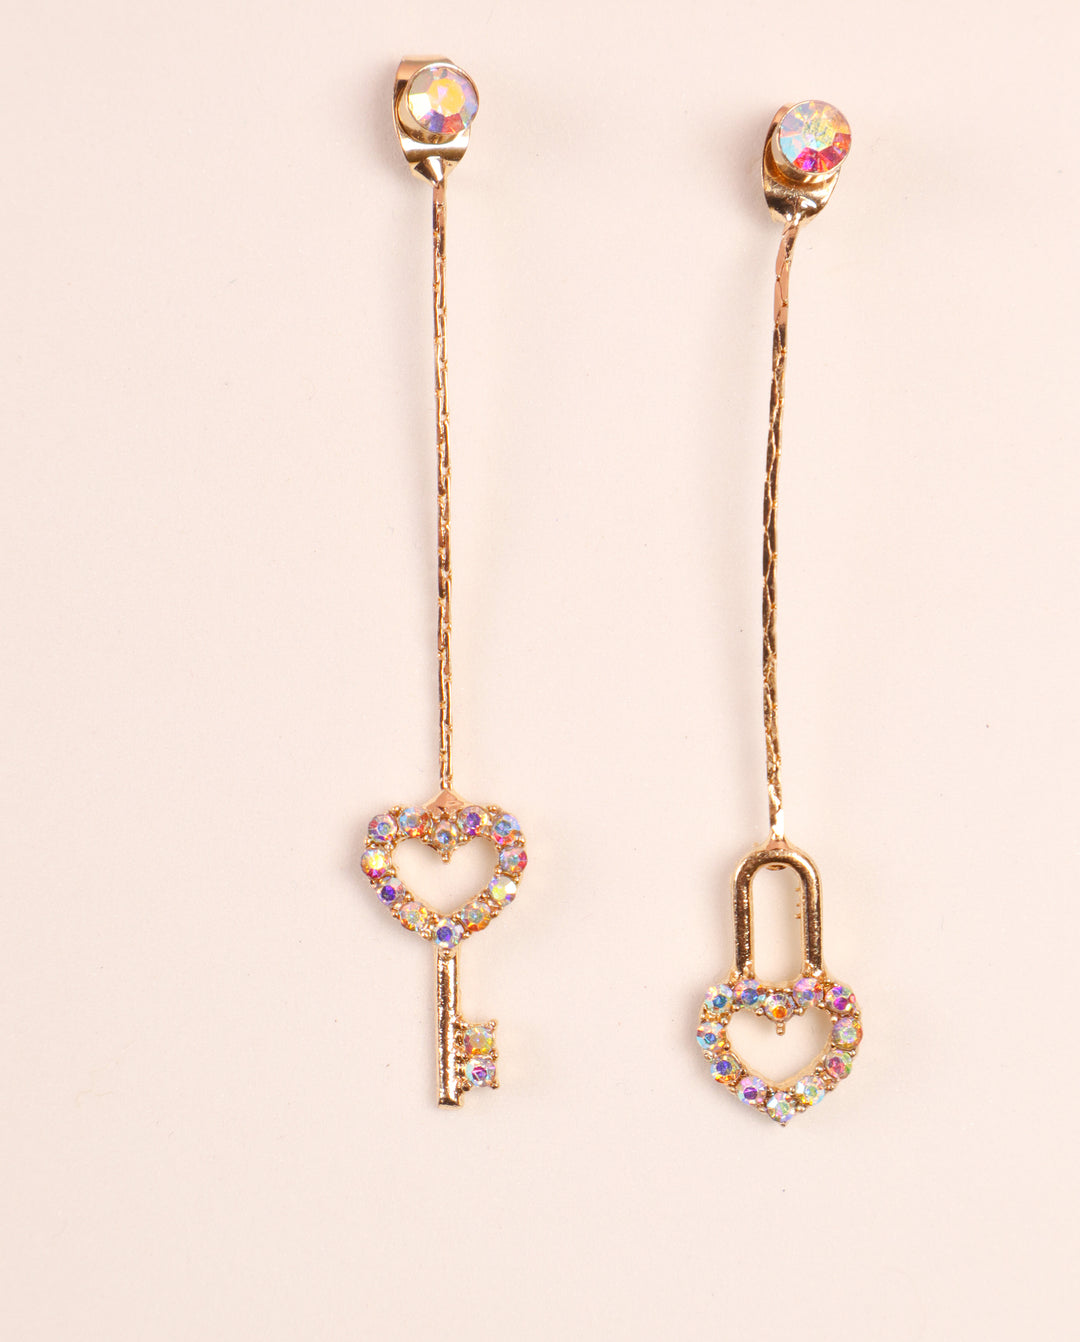 Romantic Long Lock & Key Earrings